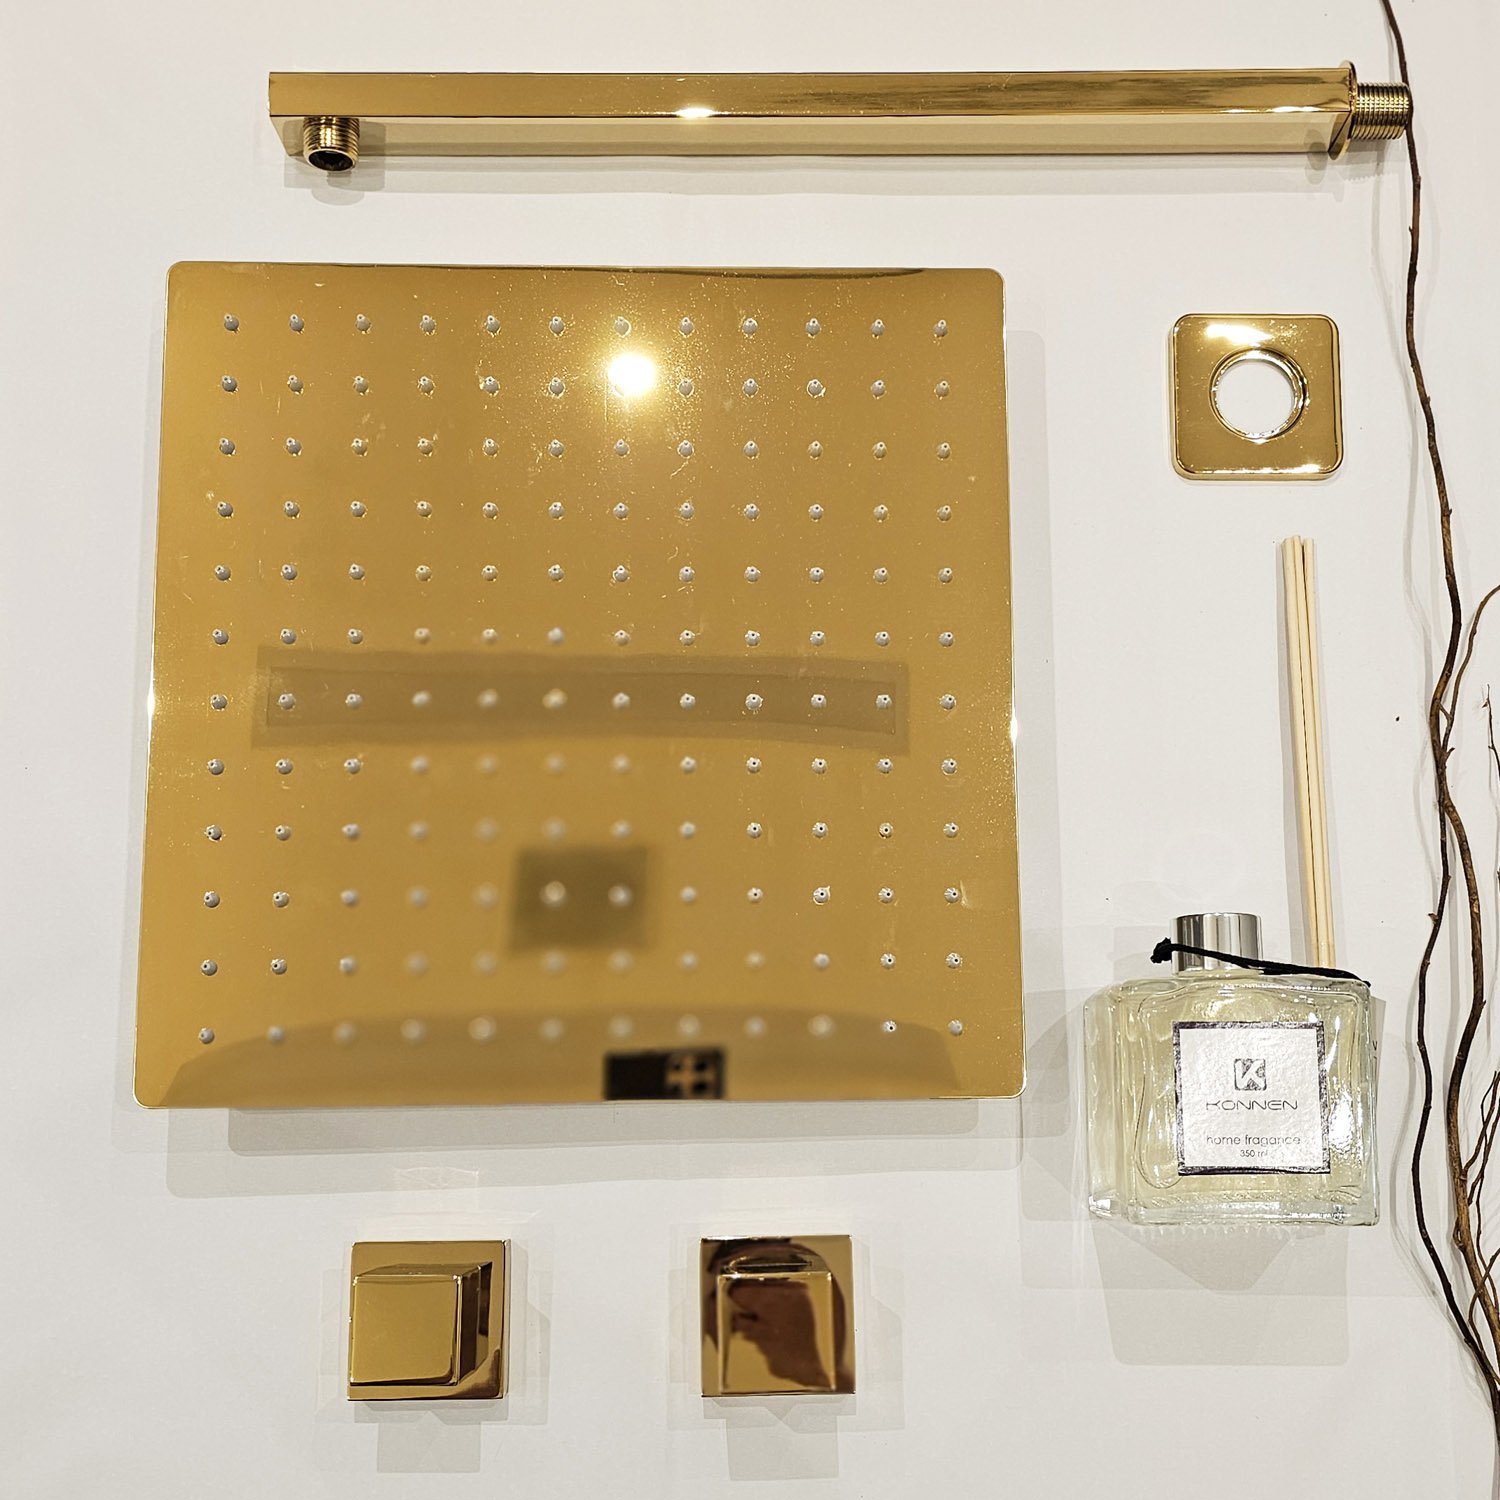 Kit Ducha Simples - Square- Ducha Quadrada de Parede 30x30cm + 2 Acabamentos de Registro - Dourado K - 1